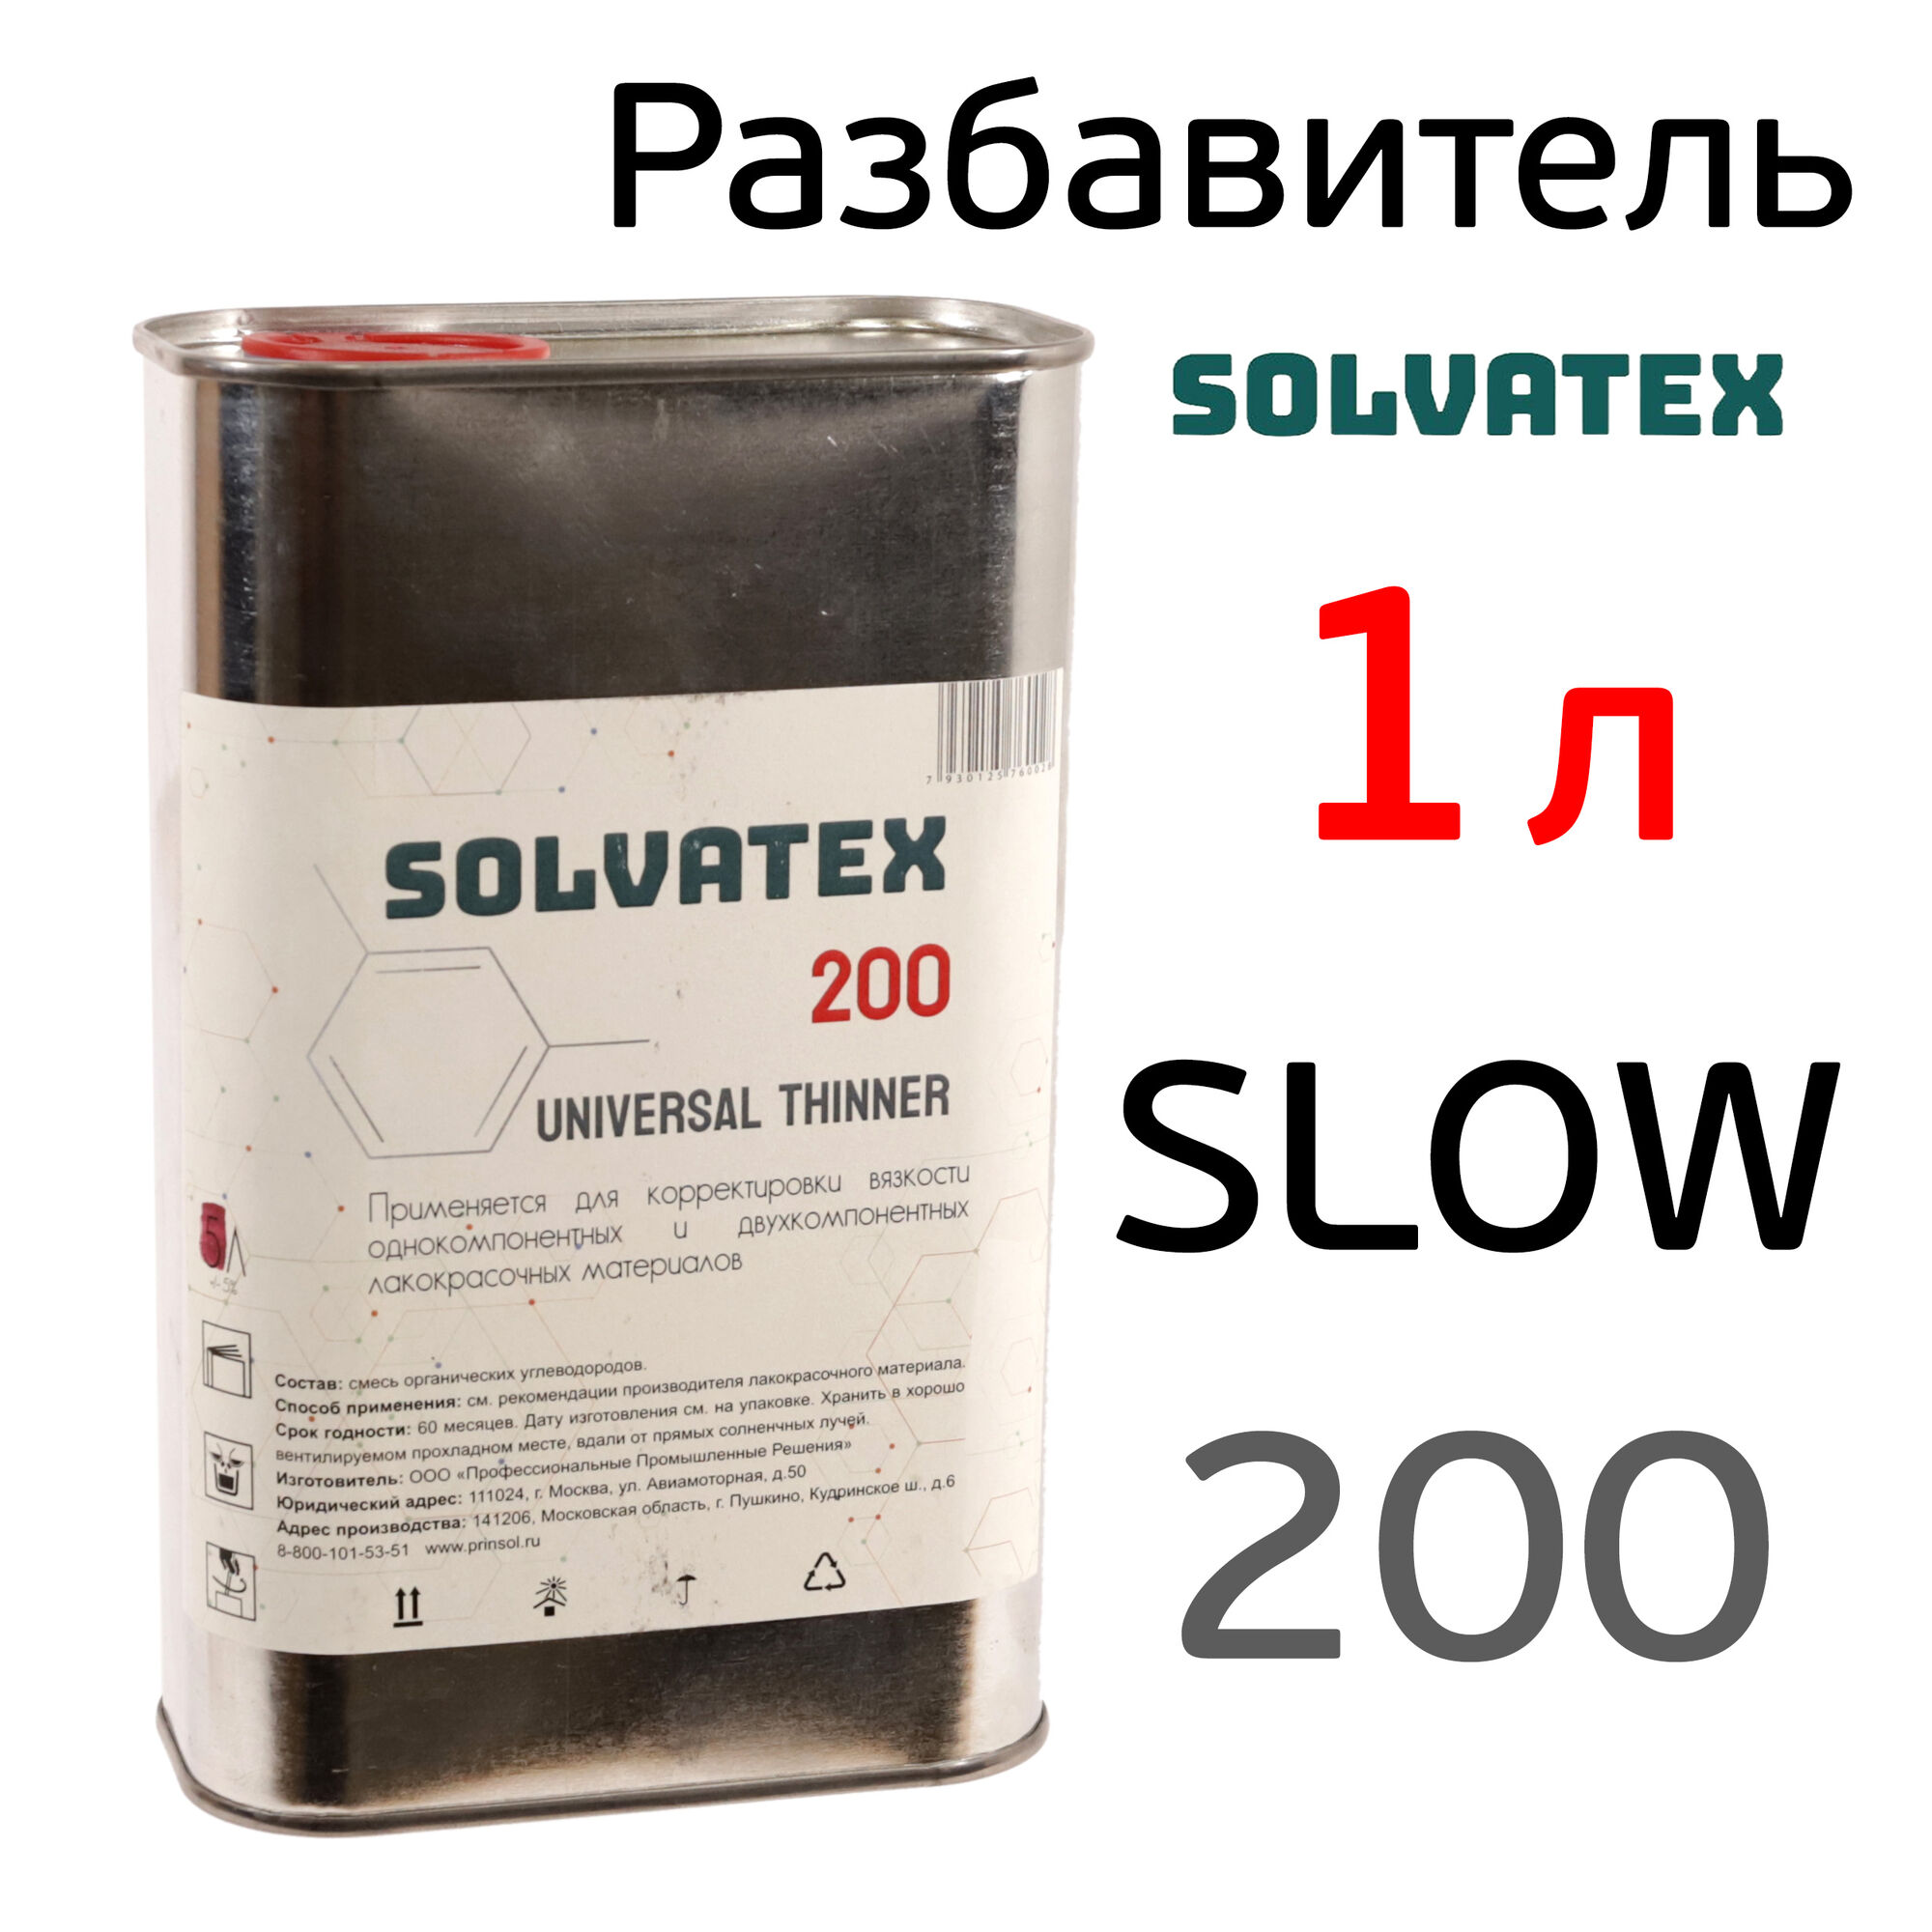 Разбавитель Solvatex 200 (1л) Slow акриловый медленный (Glasurit 352-216) универсальный